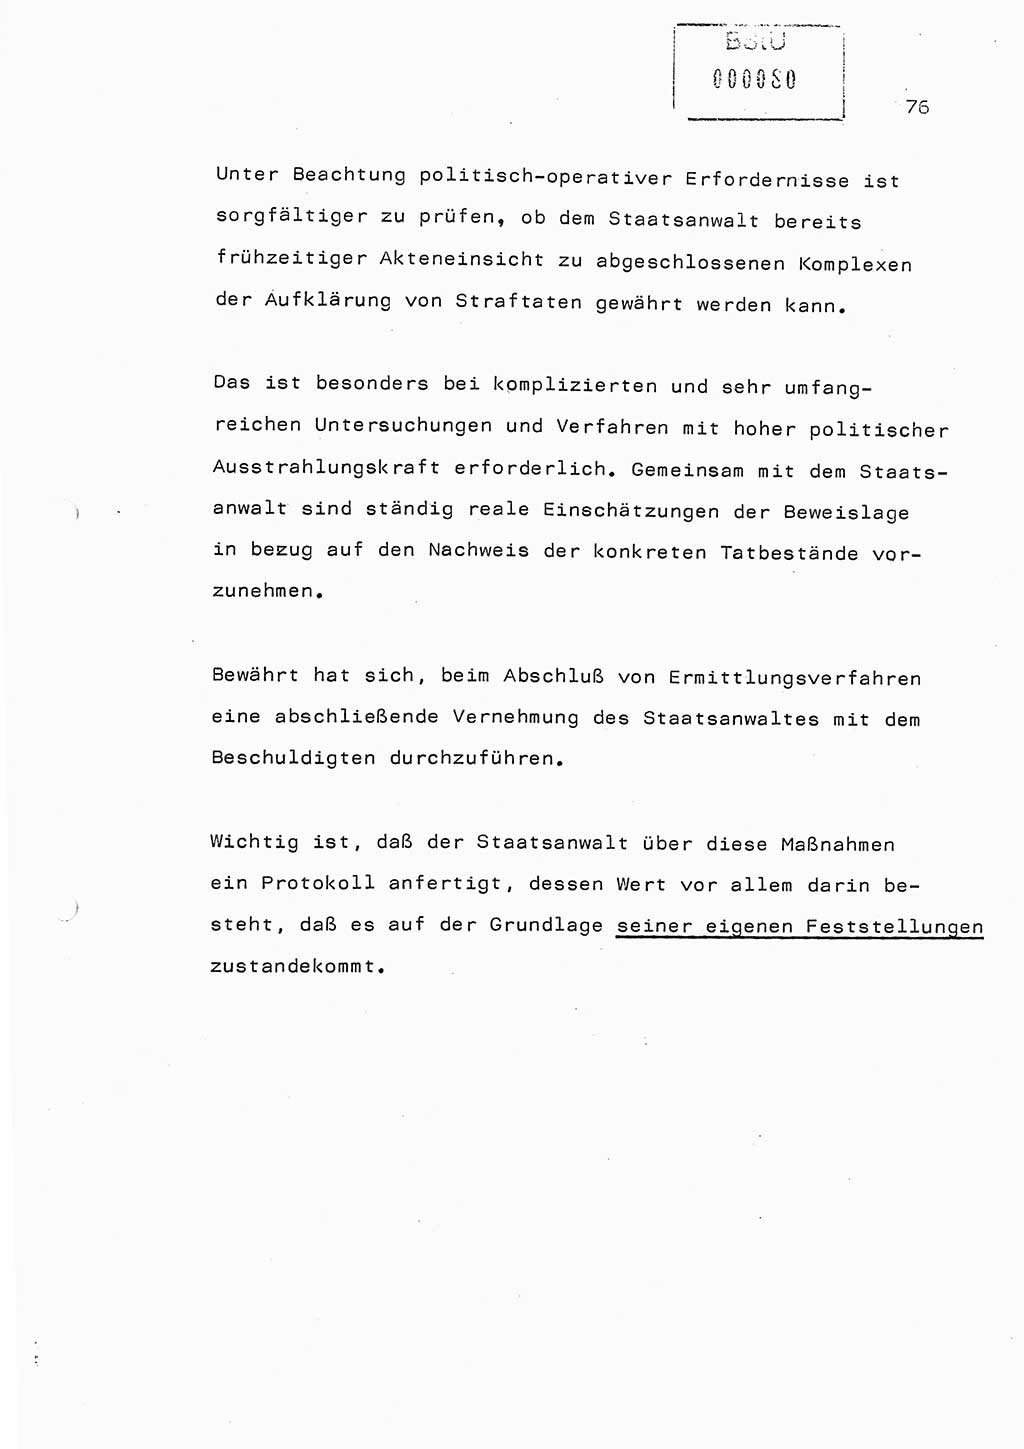 Referat (Generaloberst Erich Mielke) auf der Zentralen Dienstkonferenz am 24.5.1979 [Ministerium fÃ¼r Staatssicherheit (MfS), Deutsche Demokratische Republik (DDR), Der Minister], Berlin 1979, Seite 76 (Ref. DK DDR MfS Min. /79 1979, S. 76)